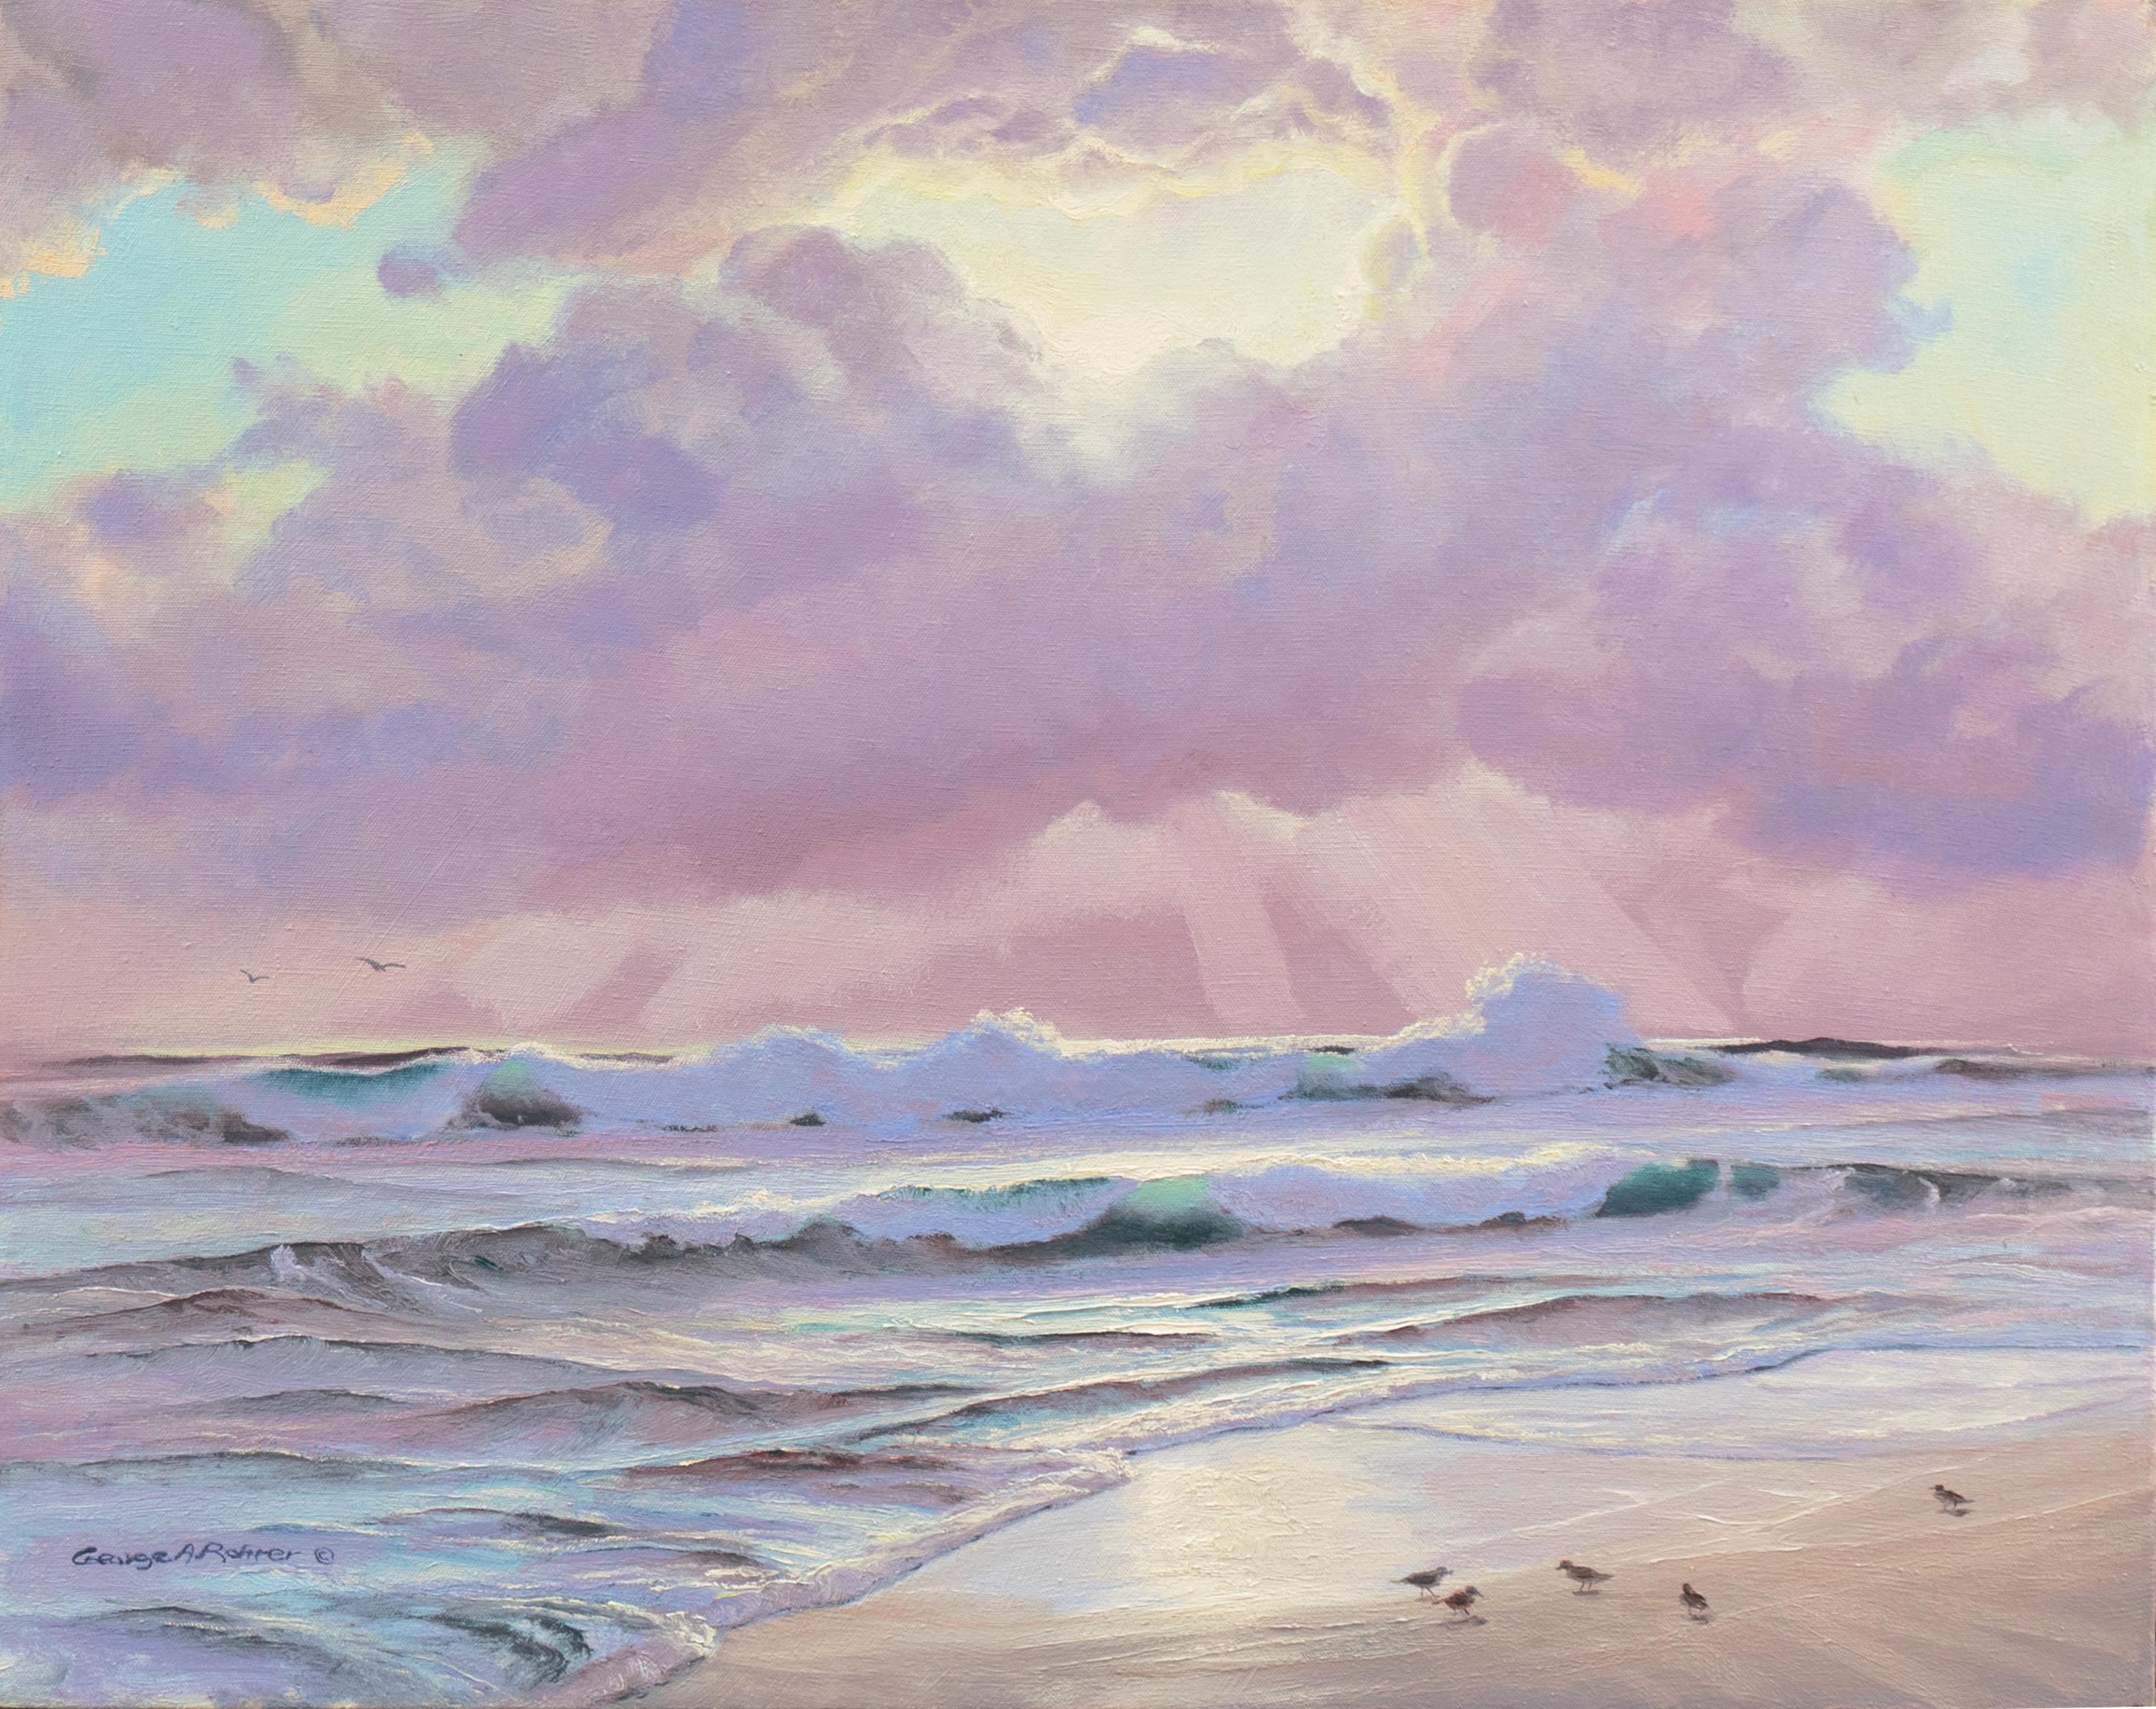 George Rohrer Landscape Painting - 'Pacific Coast Sunset', Art Institute of Chicago, Mendocino, California Artist